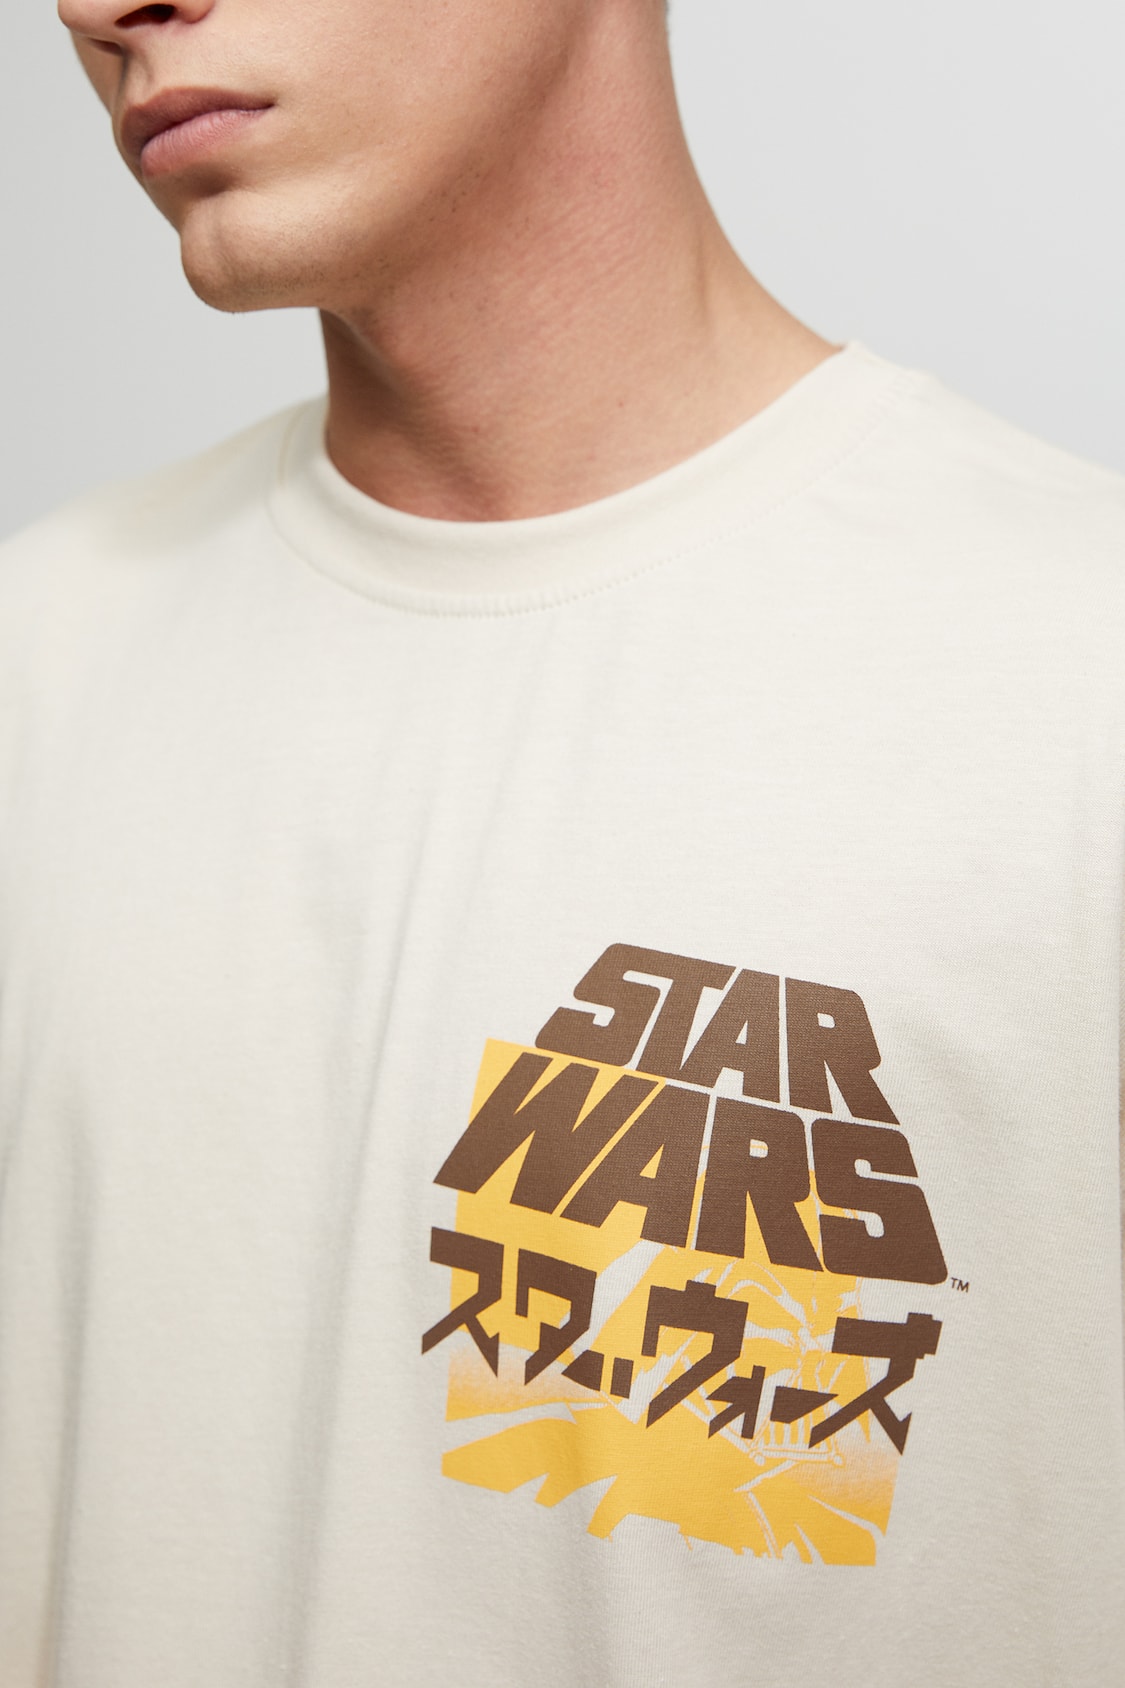 Camiseta Wars Darth Vader - PULL&BEAR